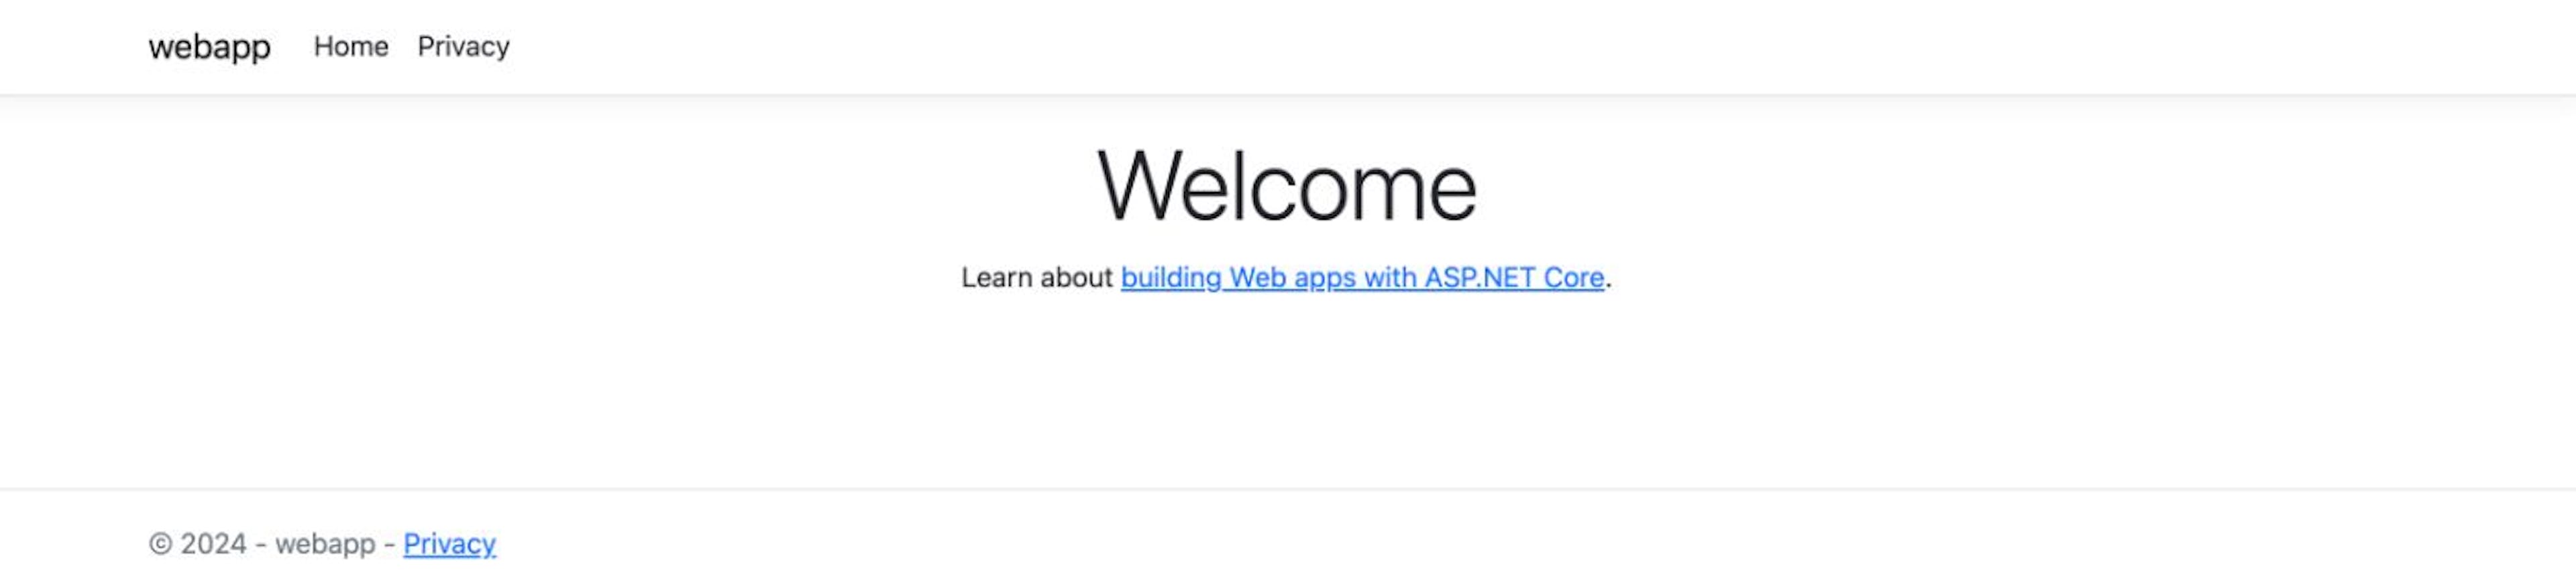 Aplicativo Web ASP.NET Core: página inicial